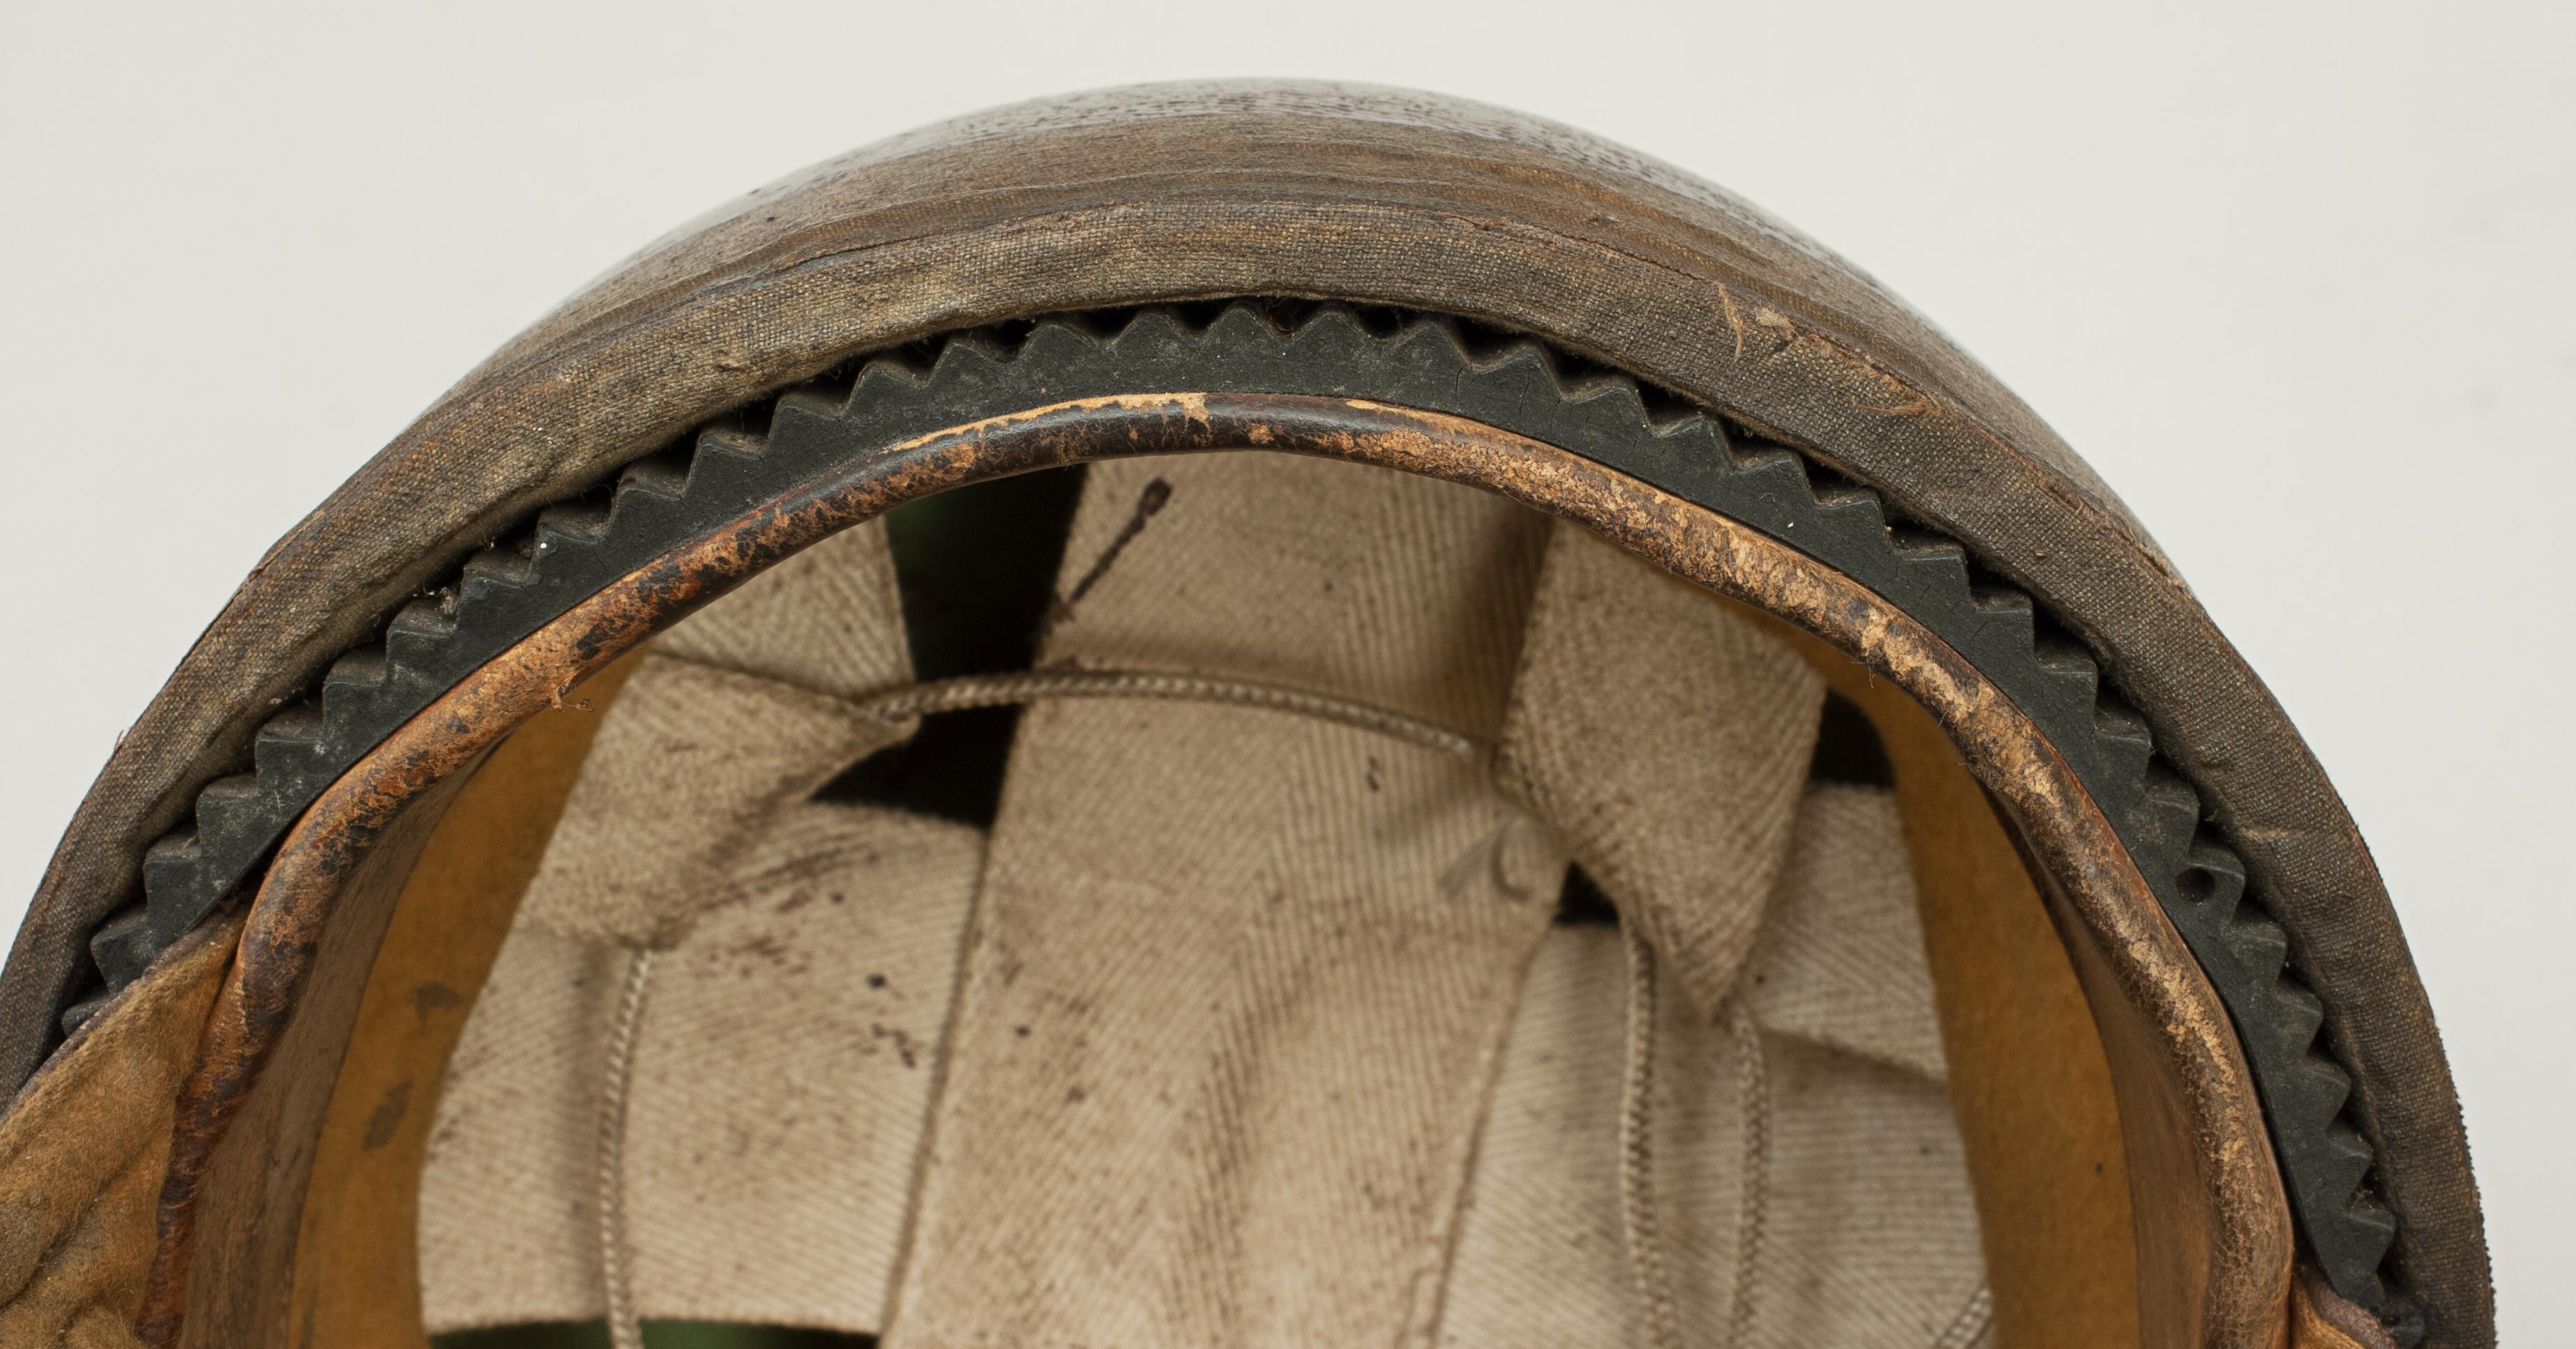 Mid-20th Century Vintage Aviakit Trackstar Motorcycle Helmet, Acu Pattern